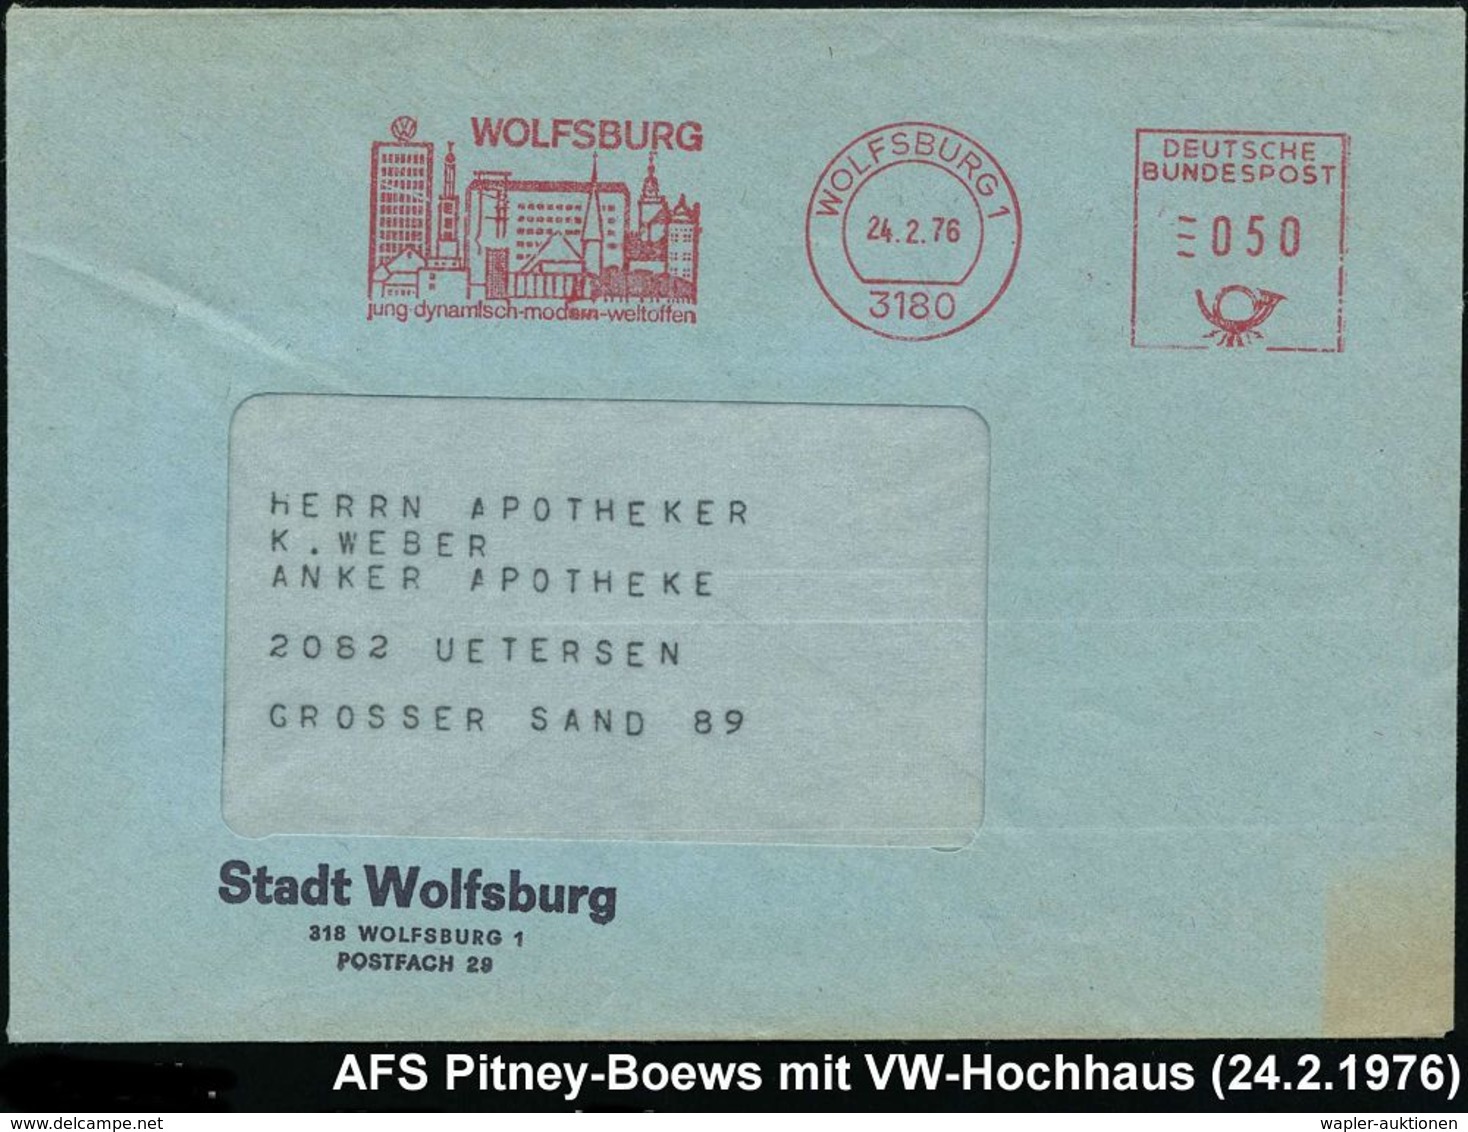 VOLKSWAGEN / VW / K.-D.-F.-WAGEN / PORSCHE : 3180 WOLFSBURG 1/ Jung-dynamisch.. 1976 (24.2.) AFS = Ortsbild Mit VW-Hochh - Cars